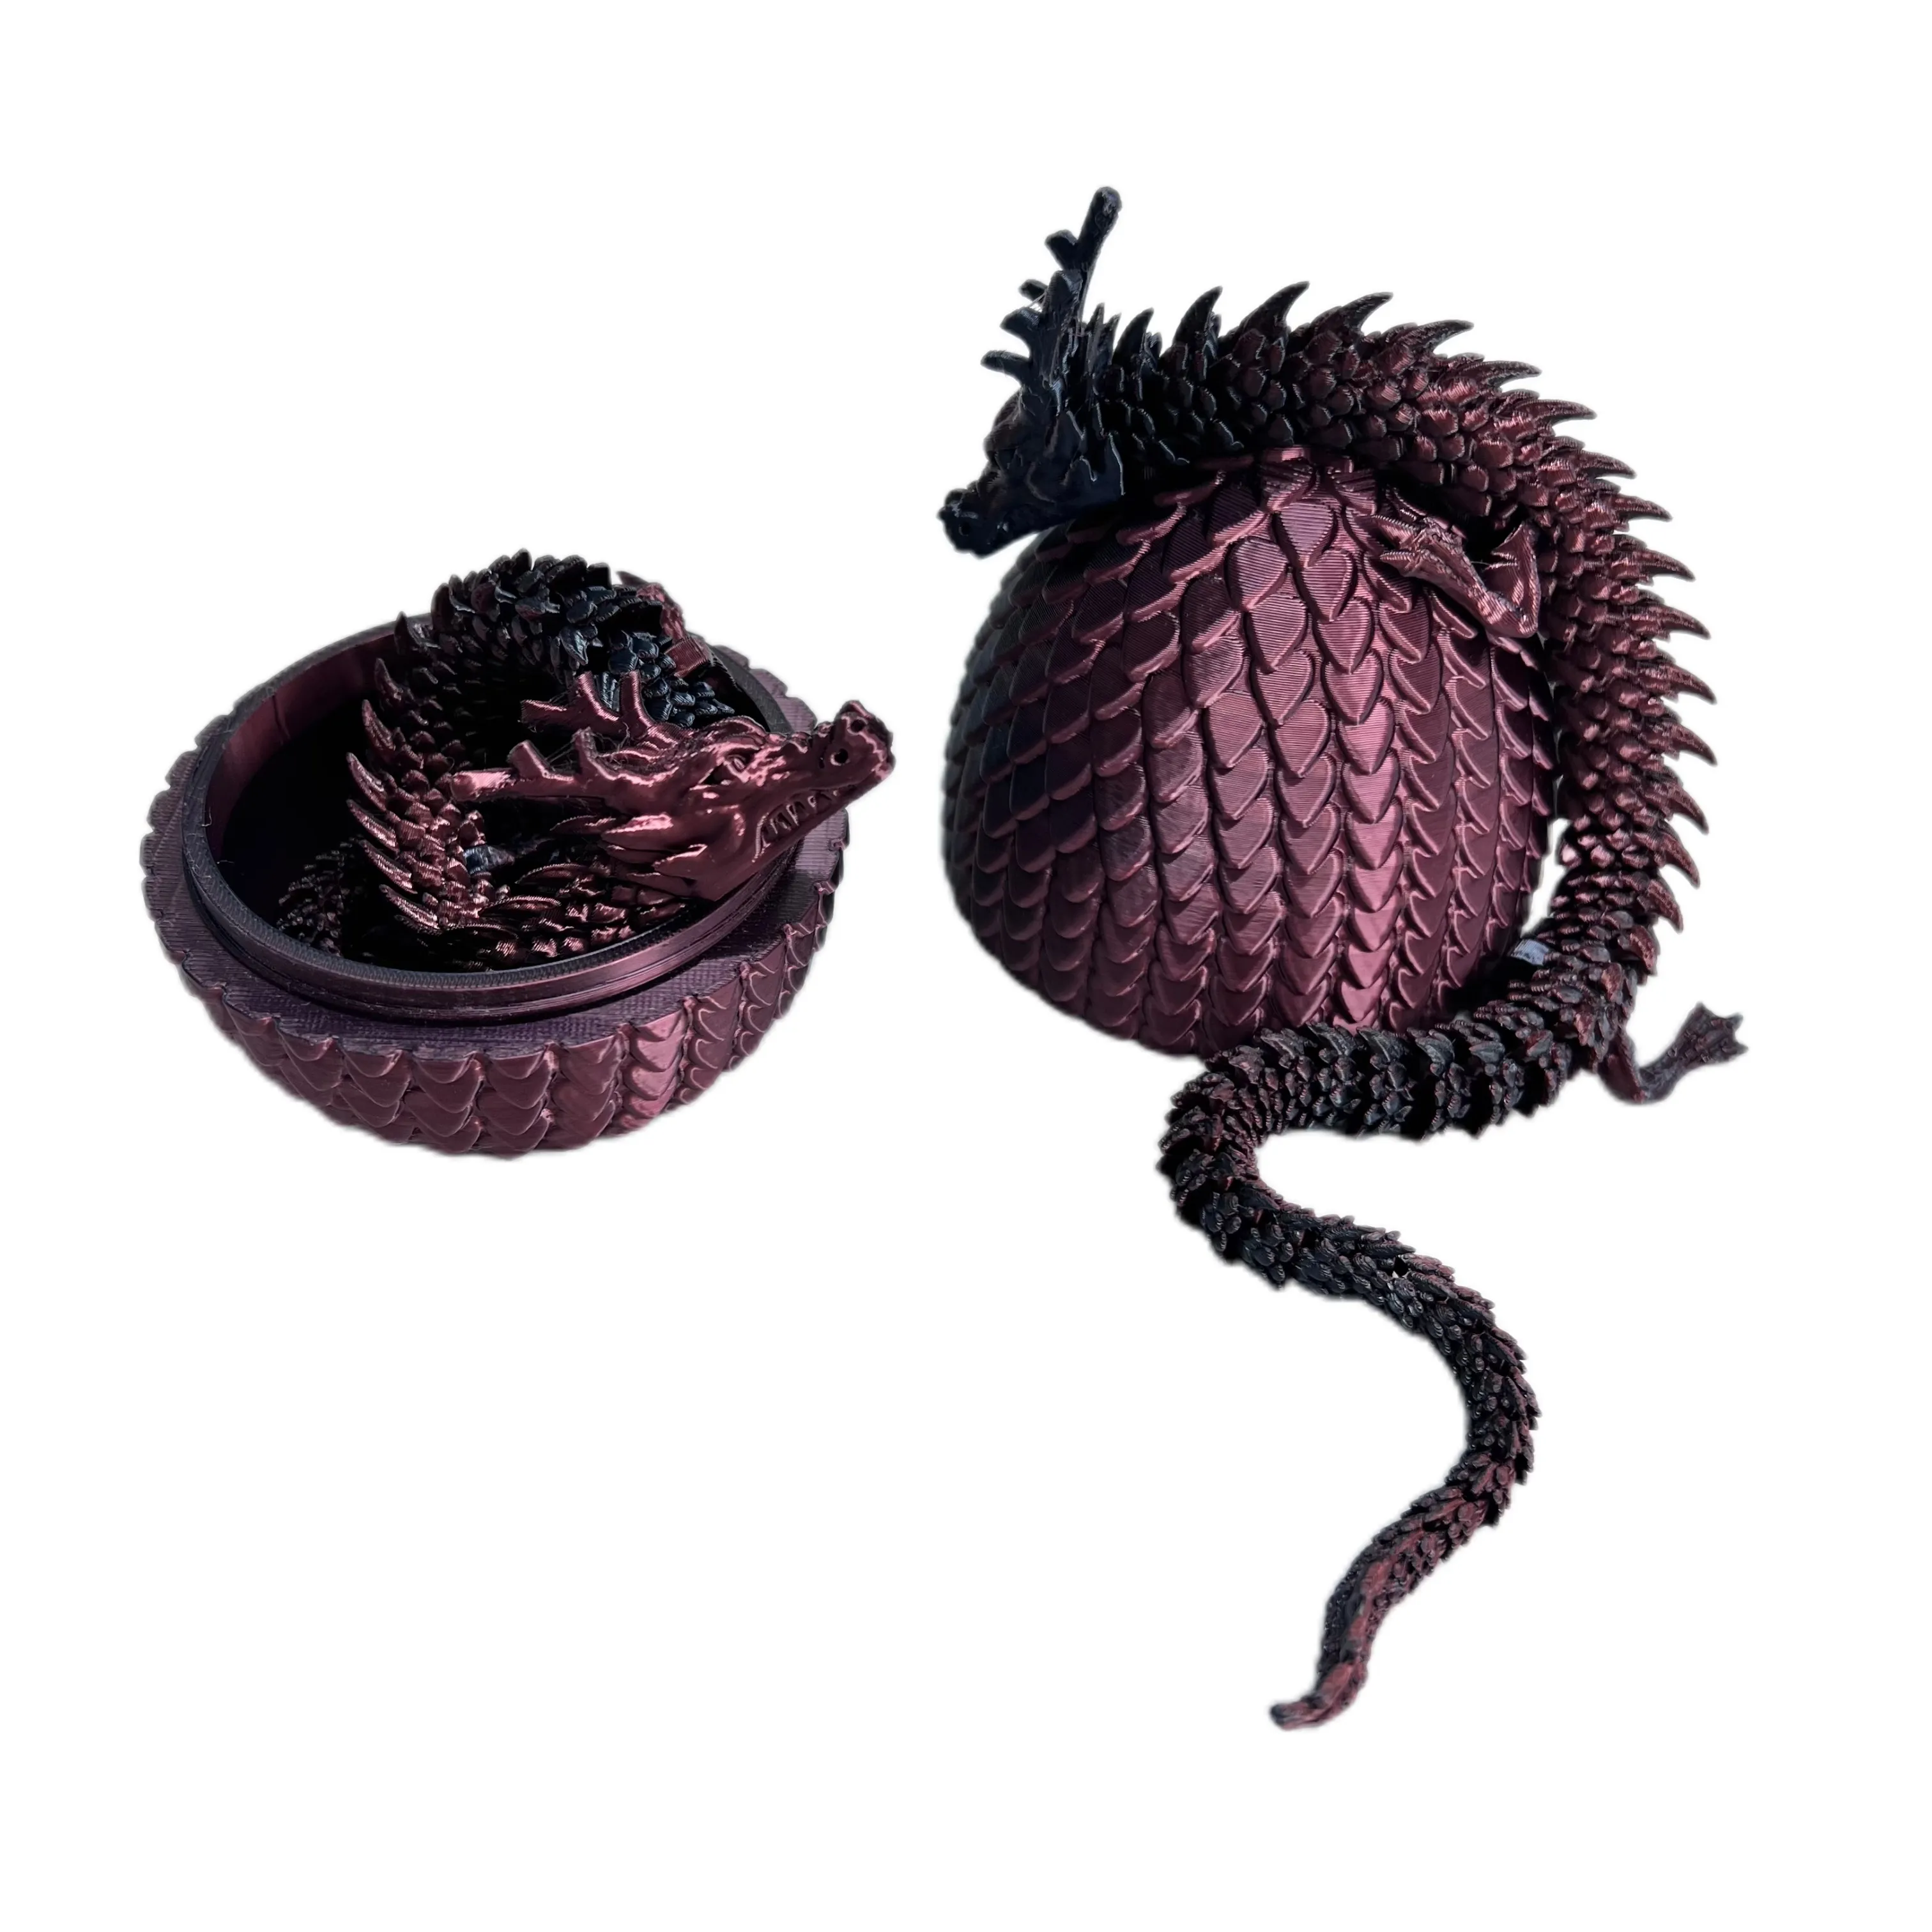 Il campione rapido del drago cinese può personalizzare il servizio di elaborazione di stampa 3D di stampa di plastica 3D FDM che stampa l'uovo del drago e del drago cinesi